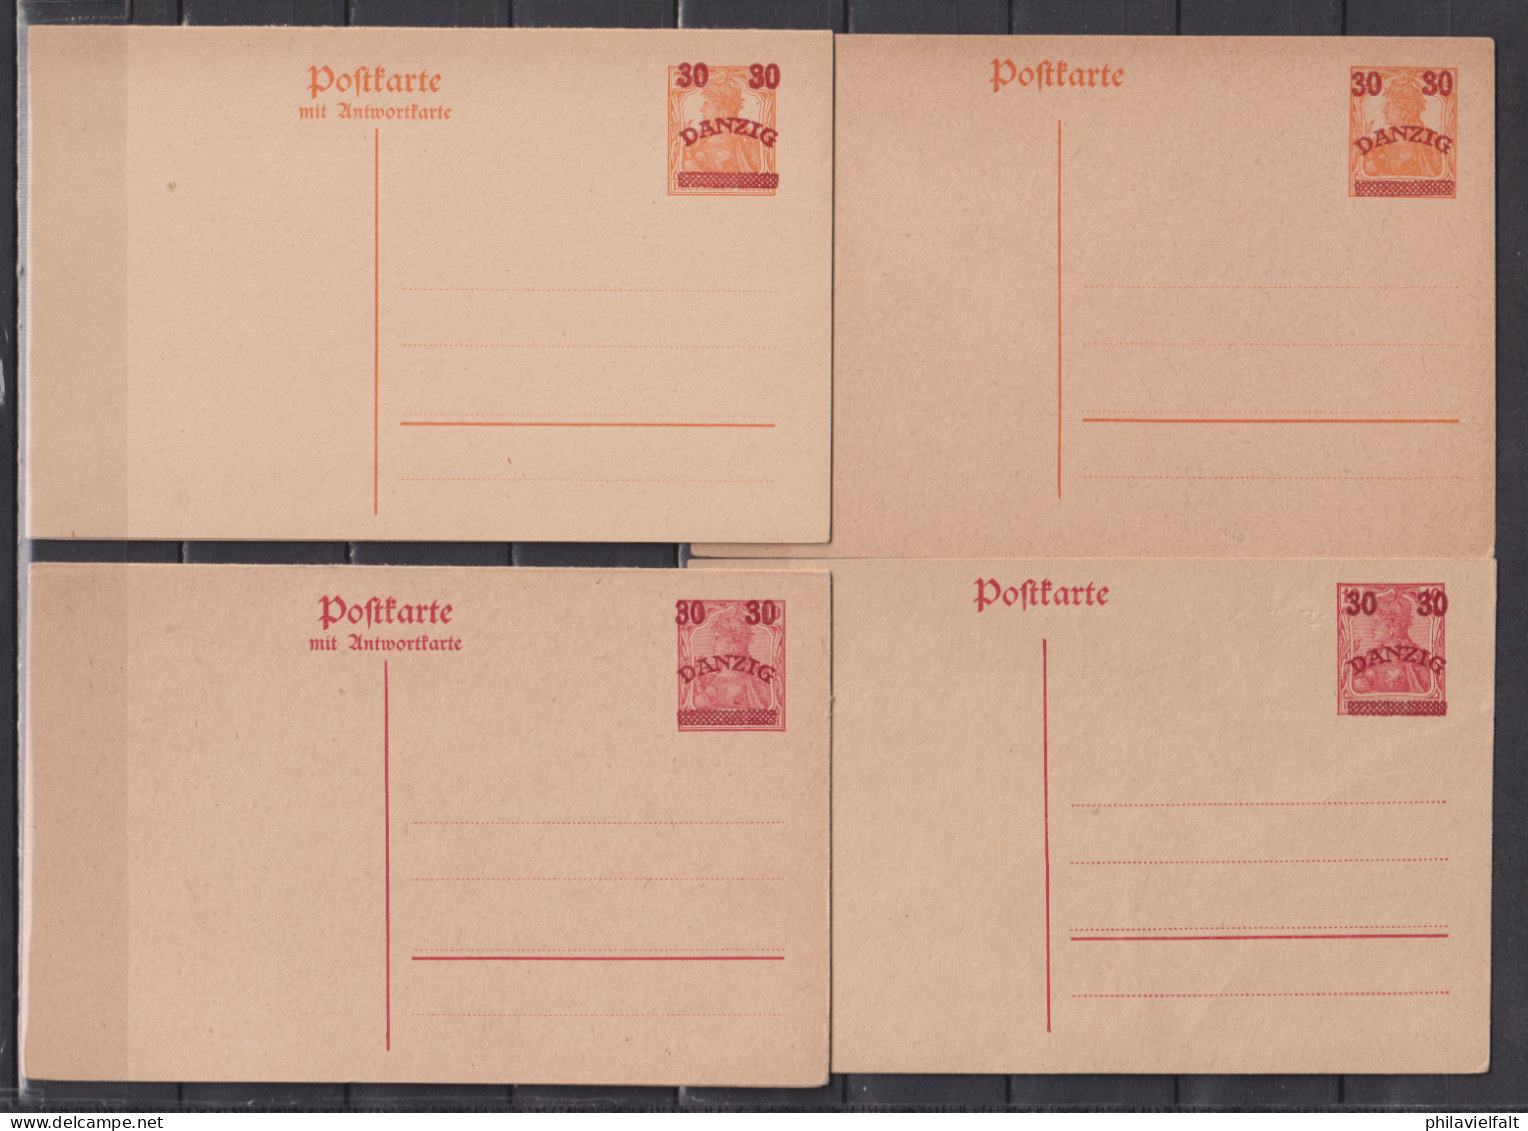 Danzig 1920 Ganzsachen Mit Aufdruck MiNo. P 6/9 ** - Postal  Stationery